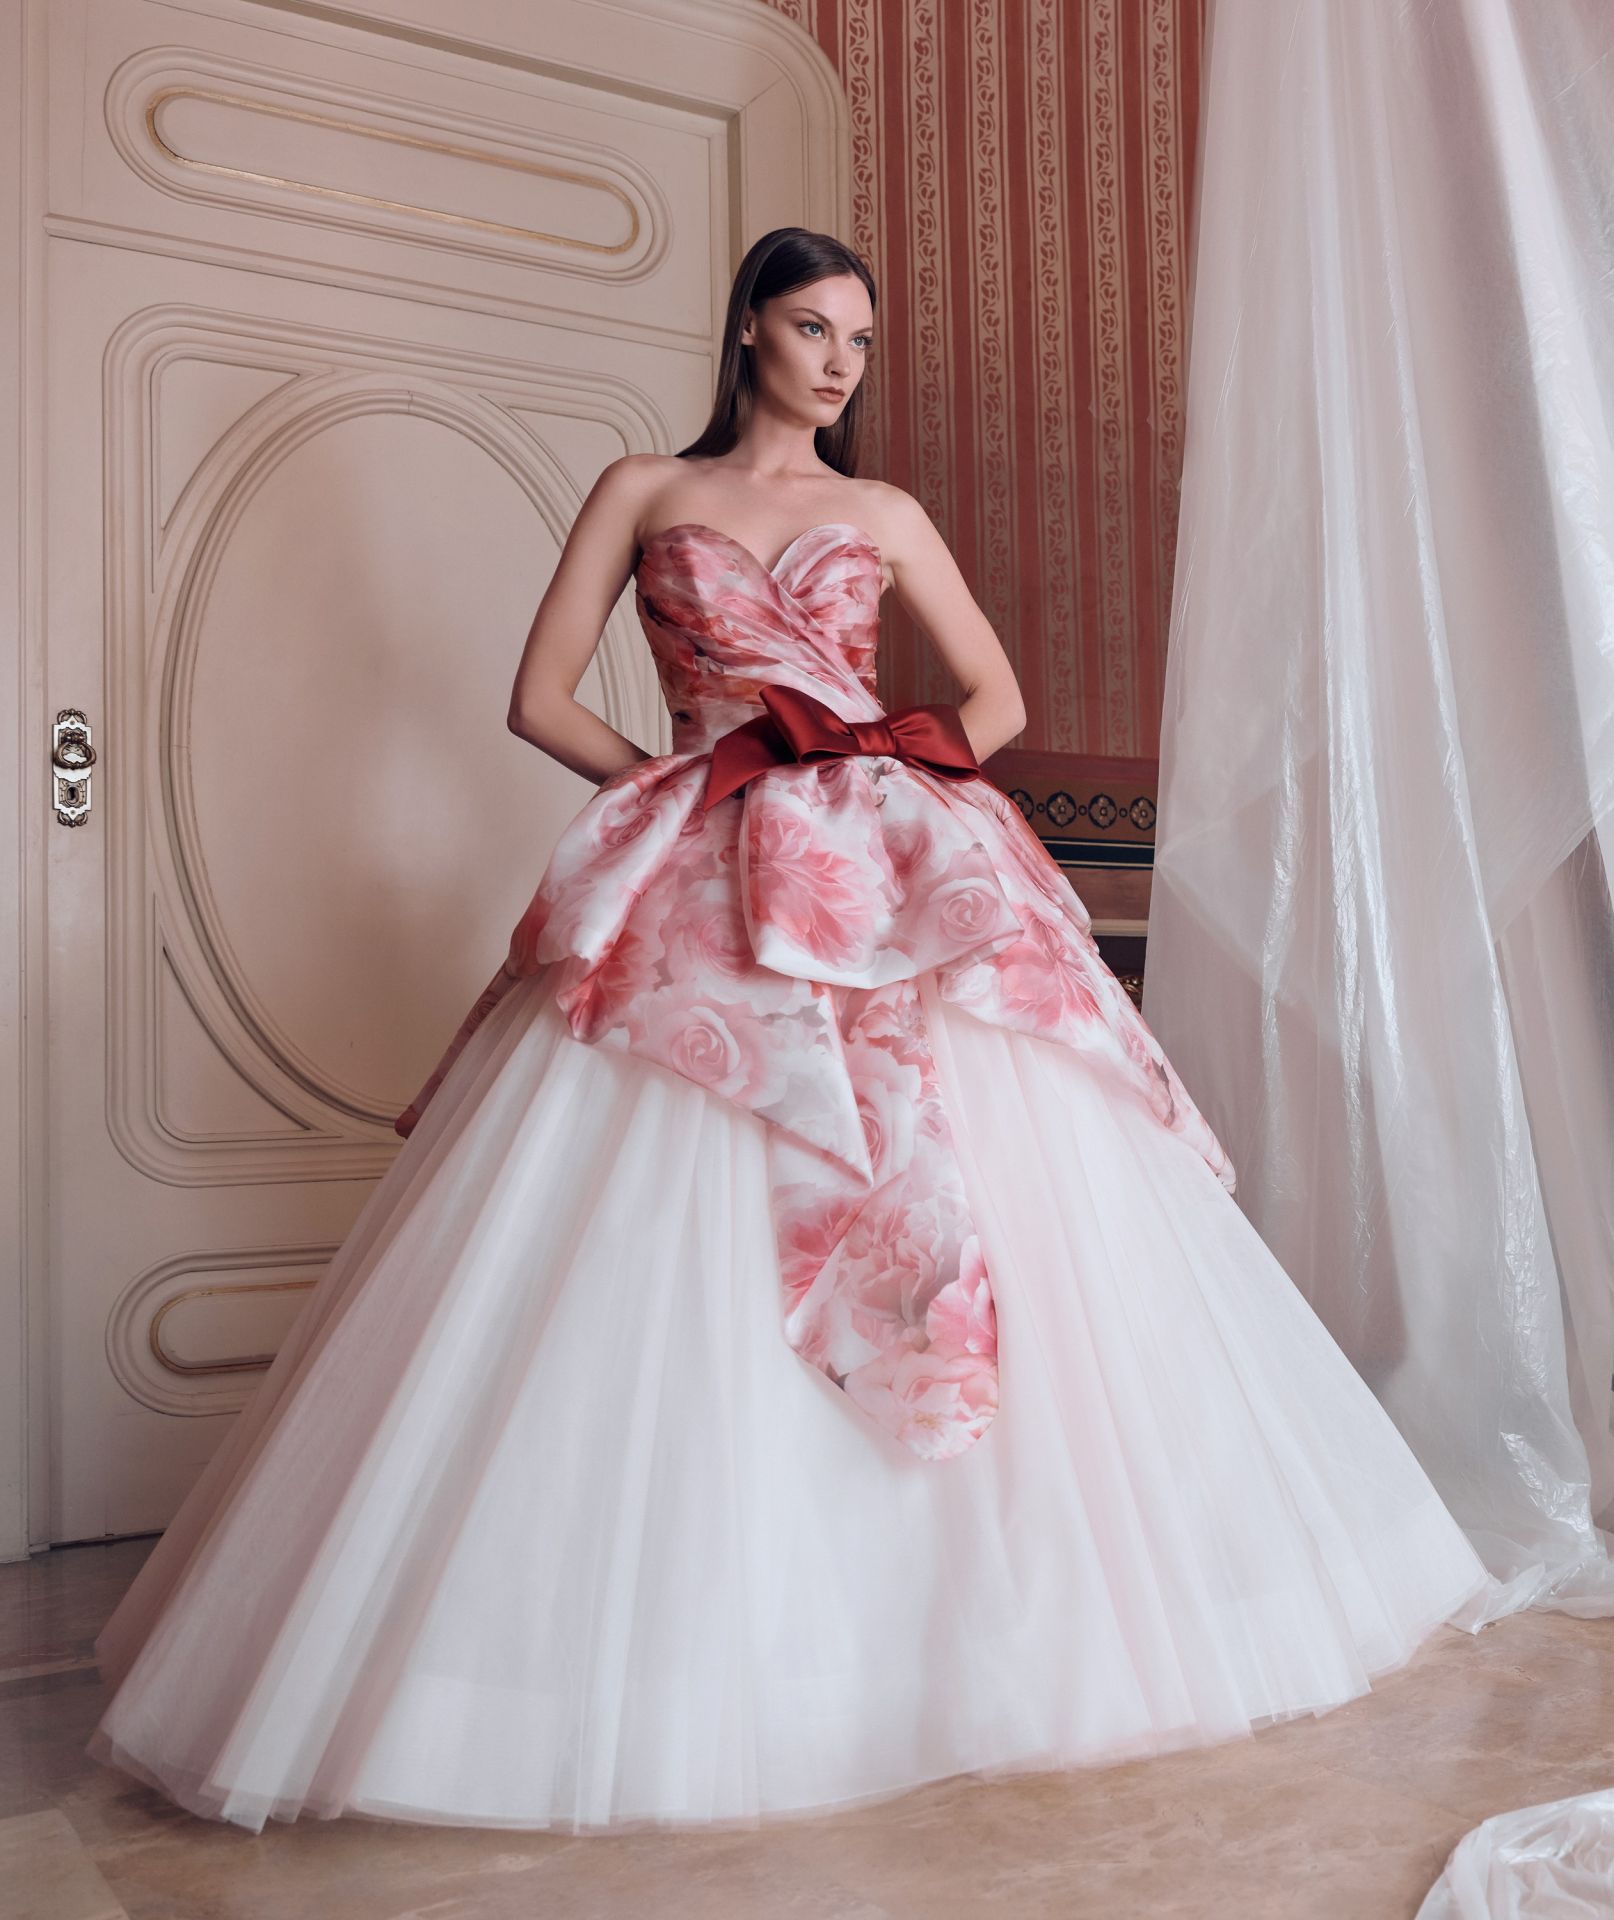 センチヒー 花柄ドレス カラードレス ピンク j6Mpv-m16158722387 